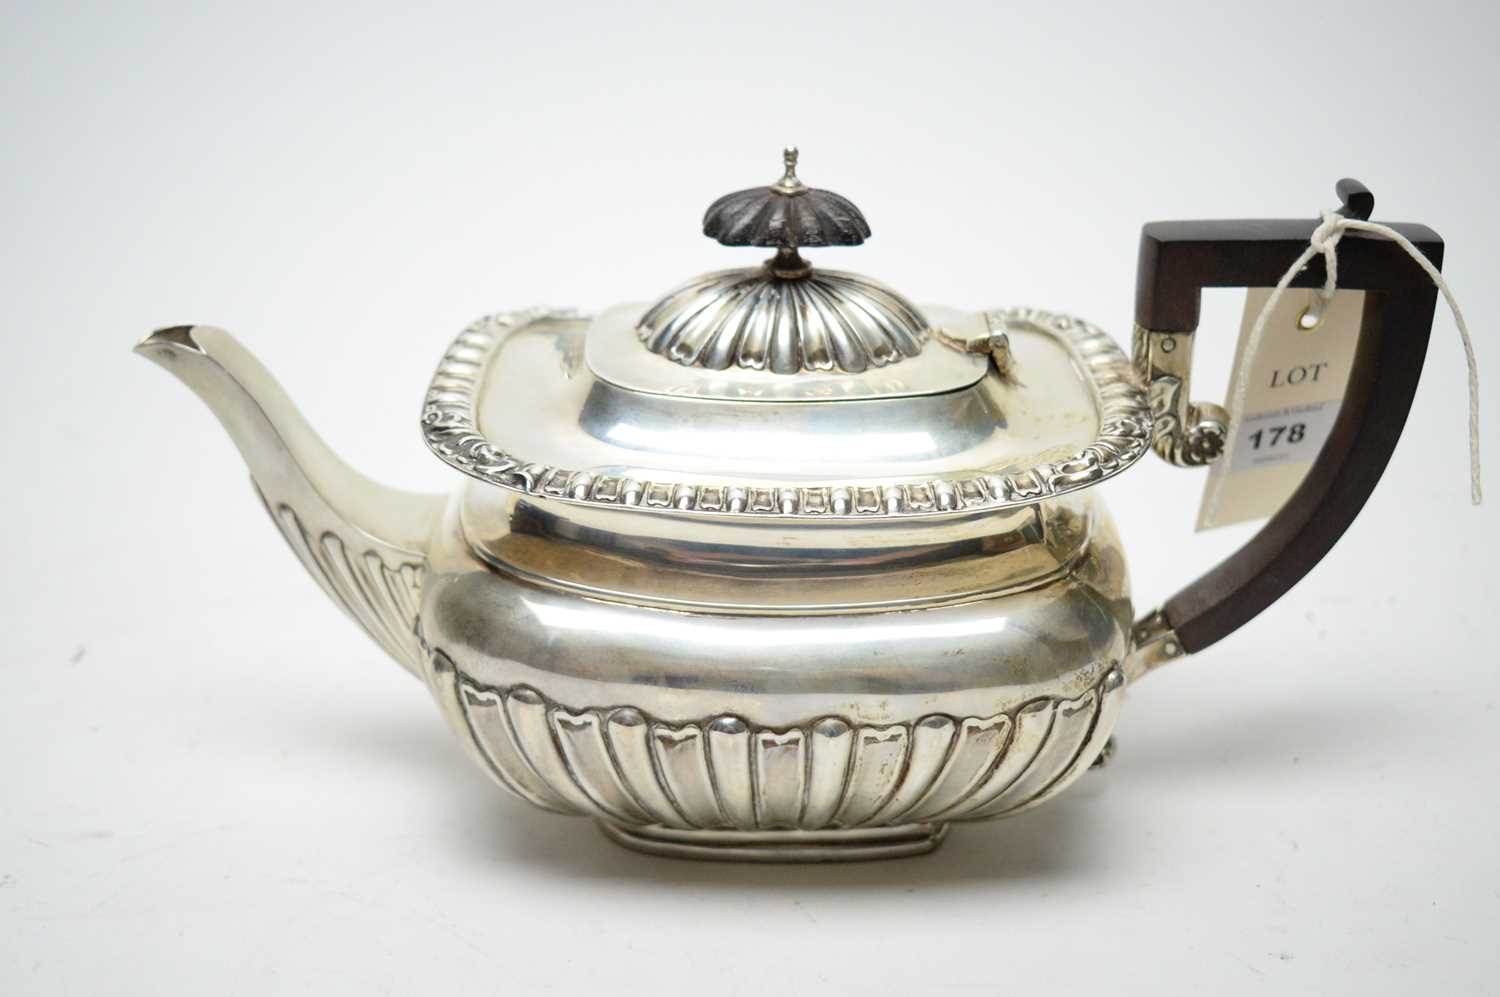 Lot 178 - A silver teapot